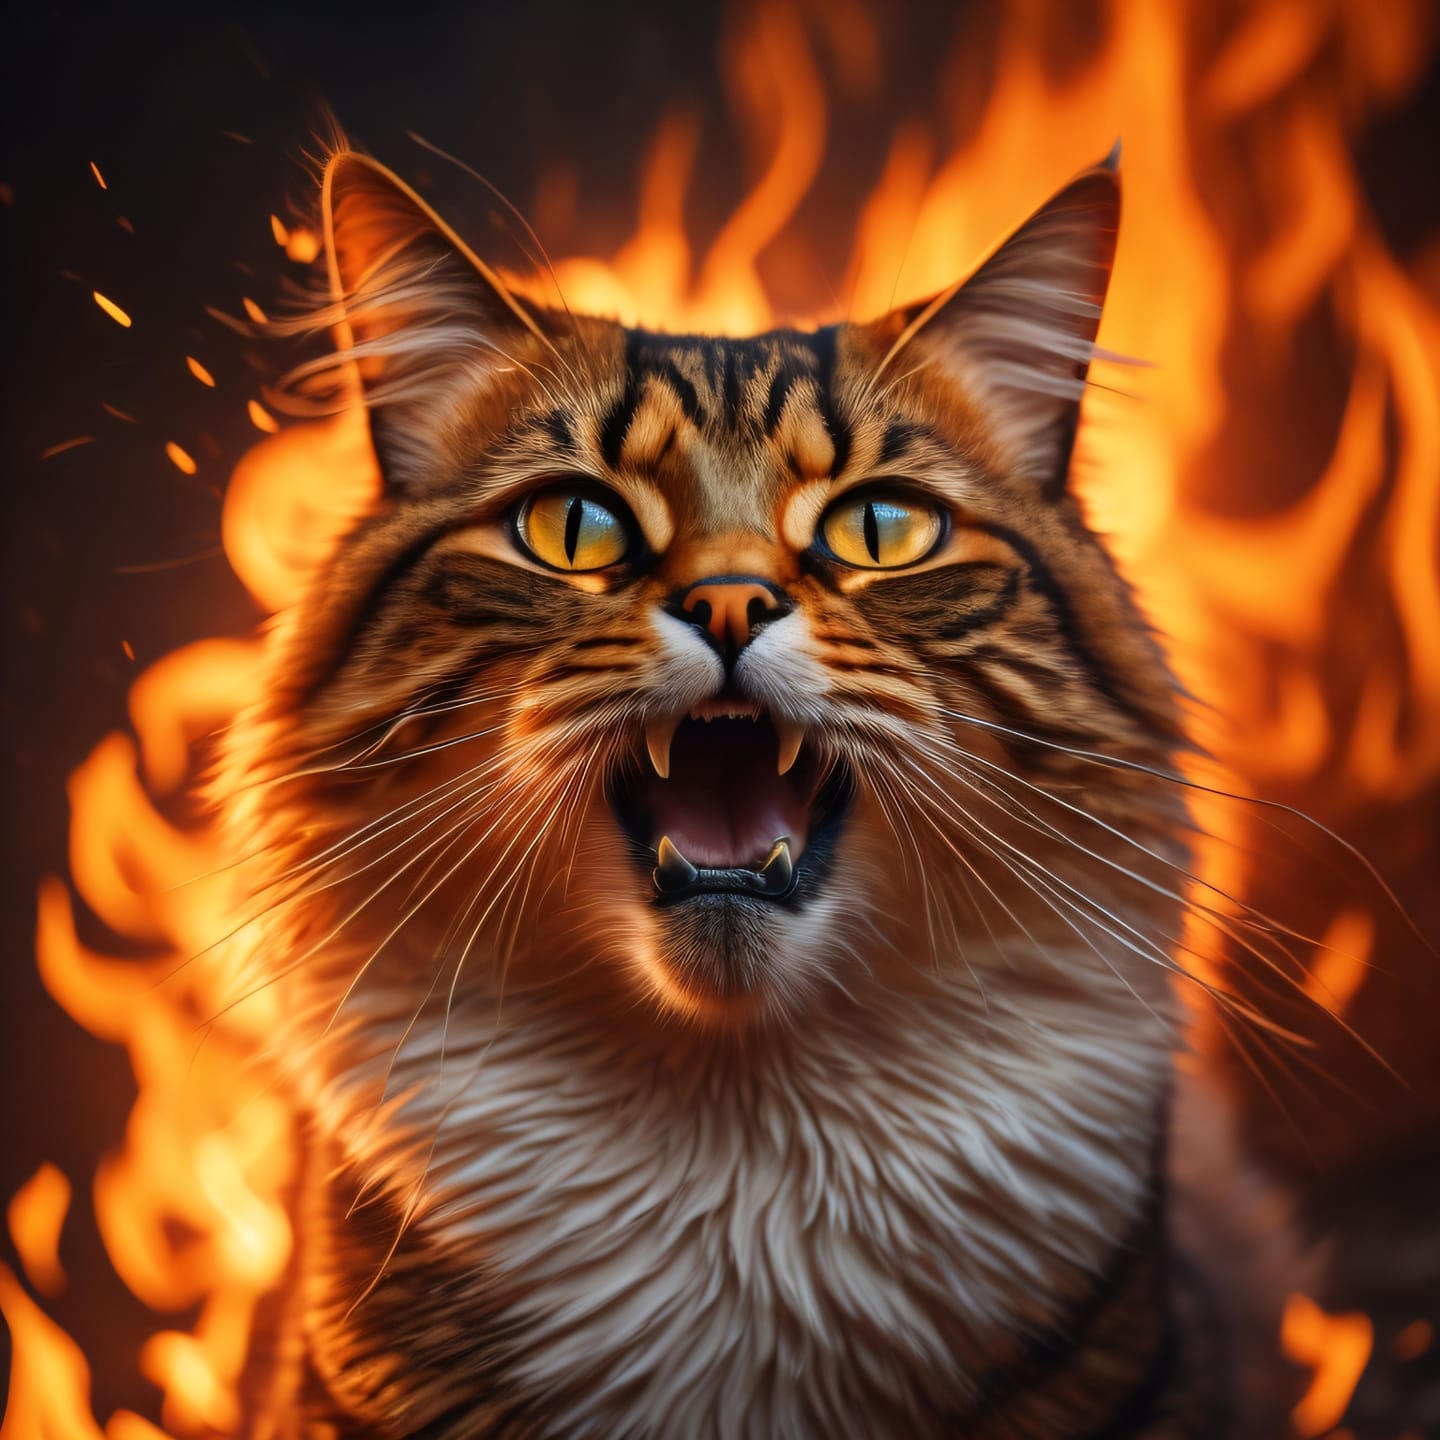 Angry Cat Diamond Painting